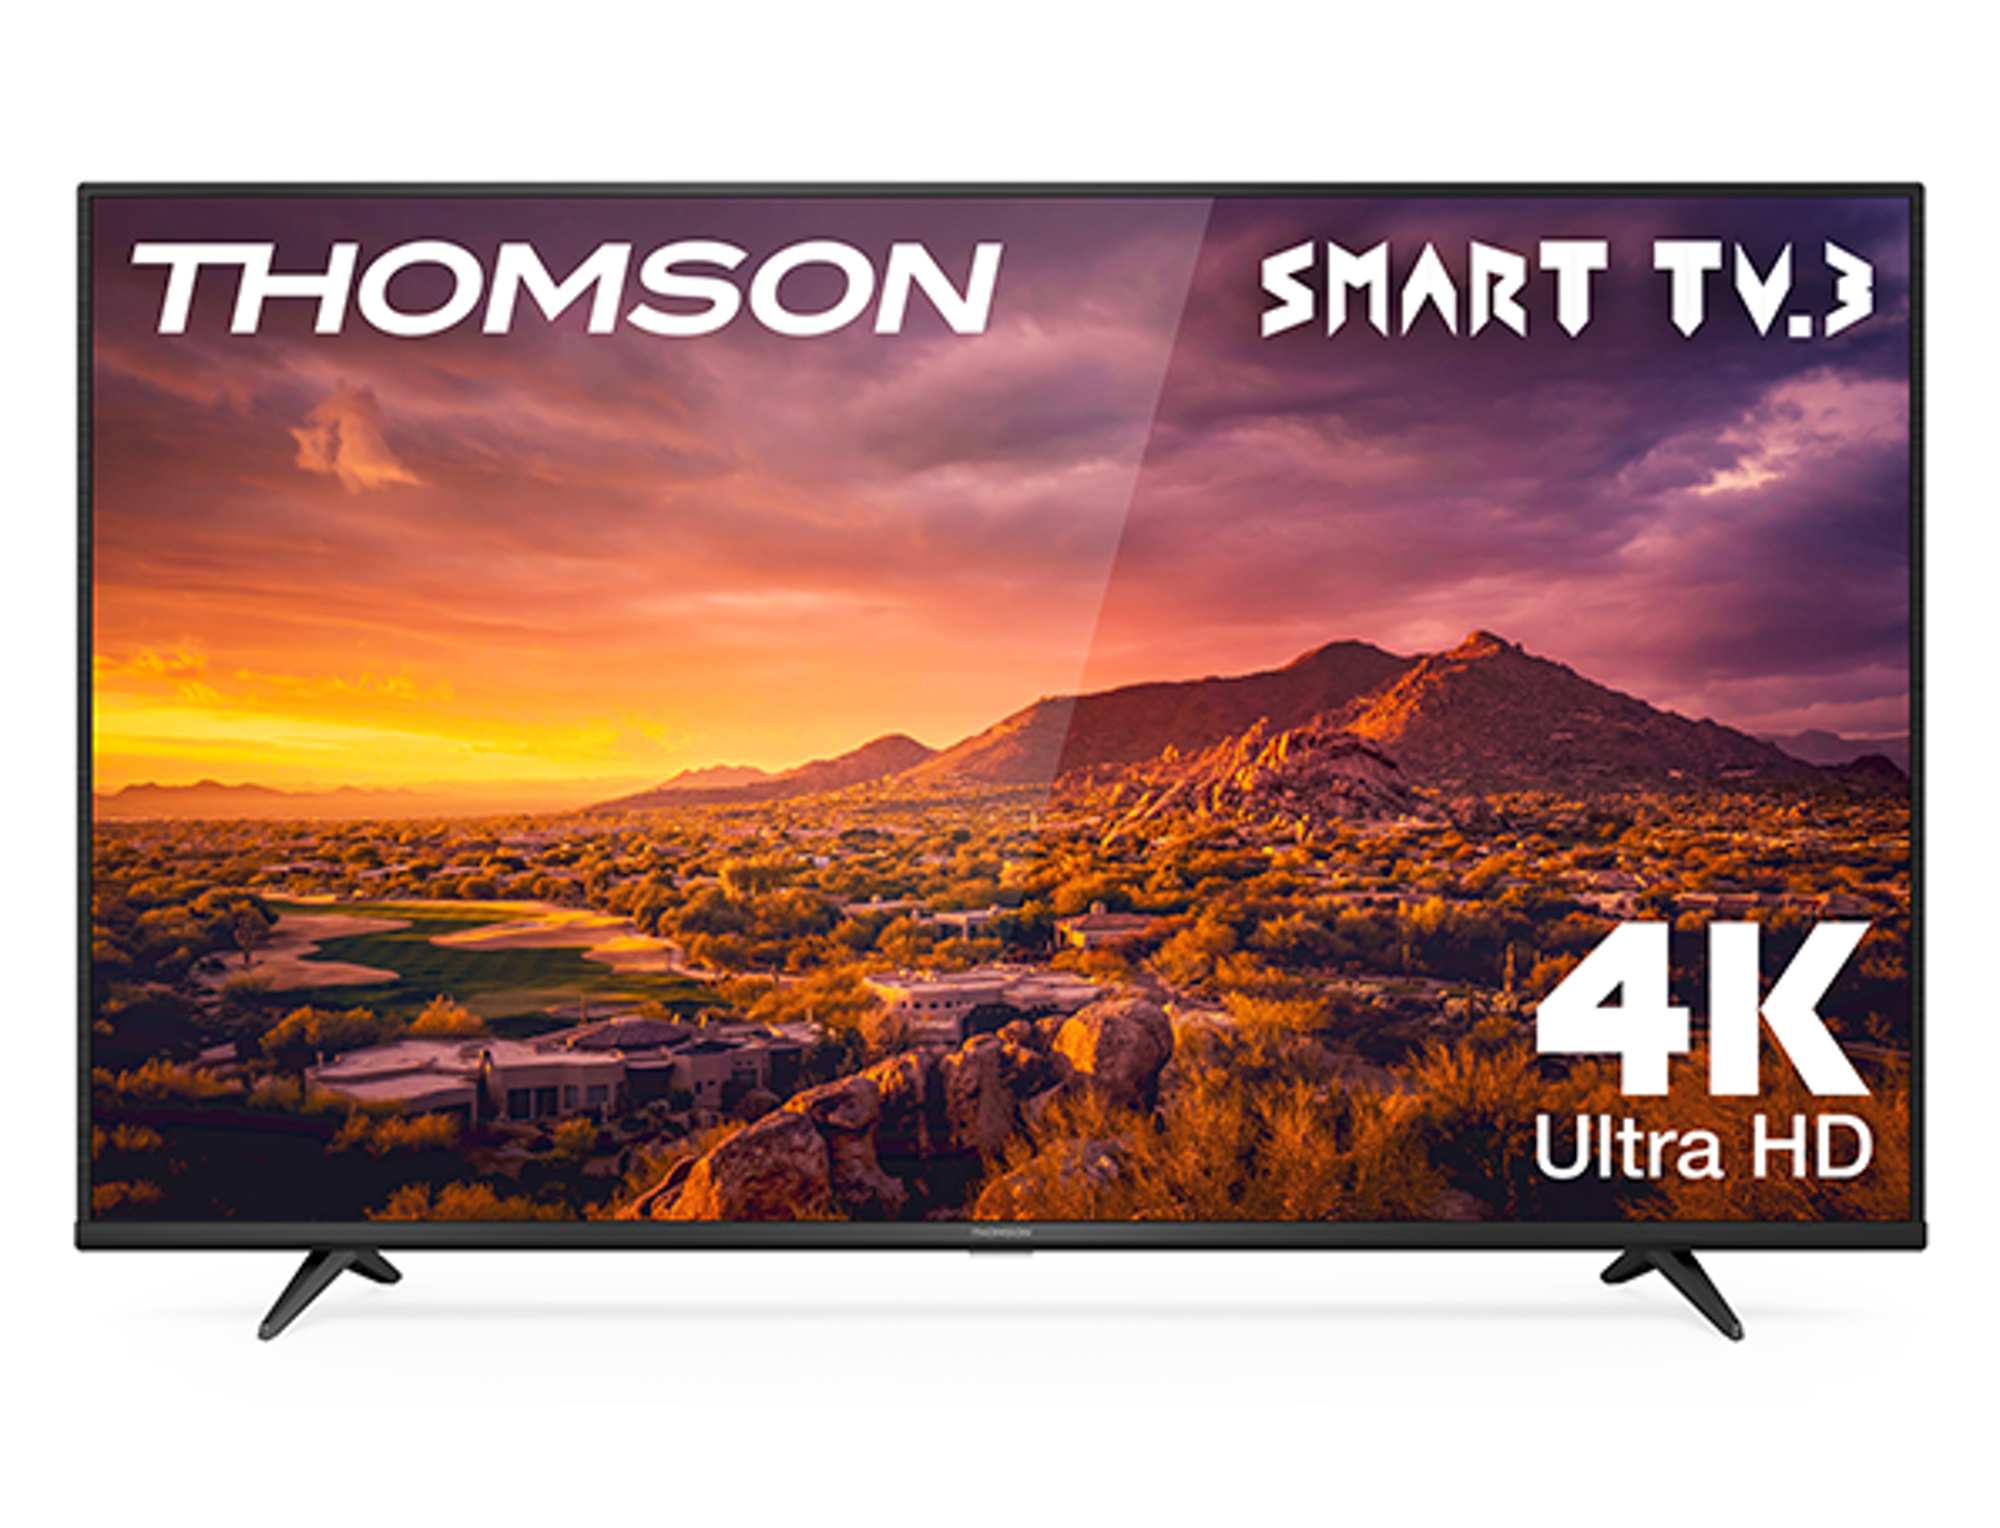 Thomson G63 Series 43UG6300 TV